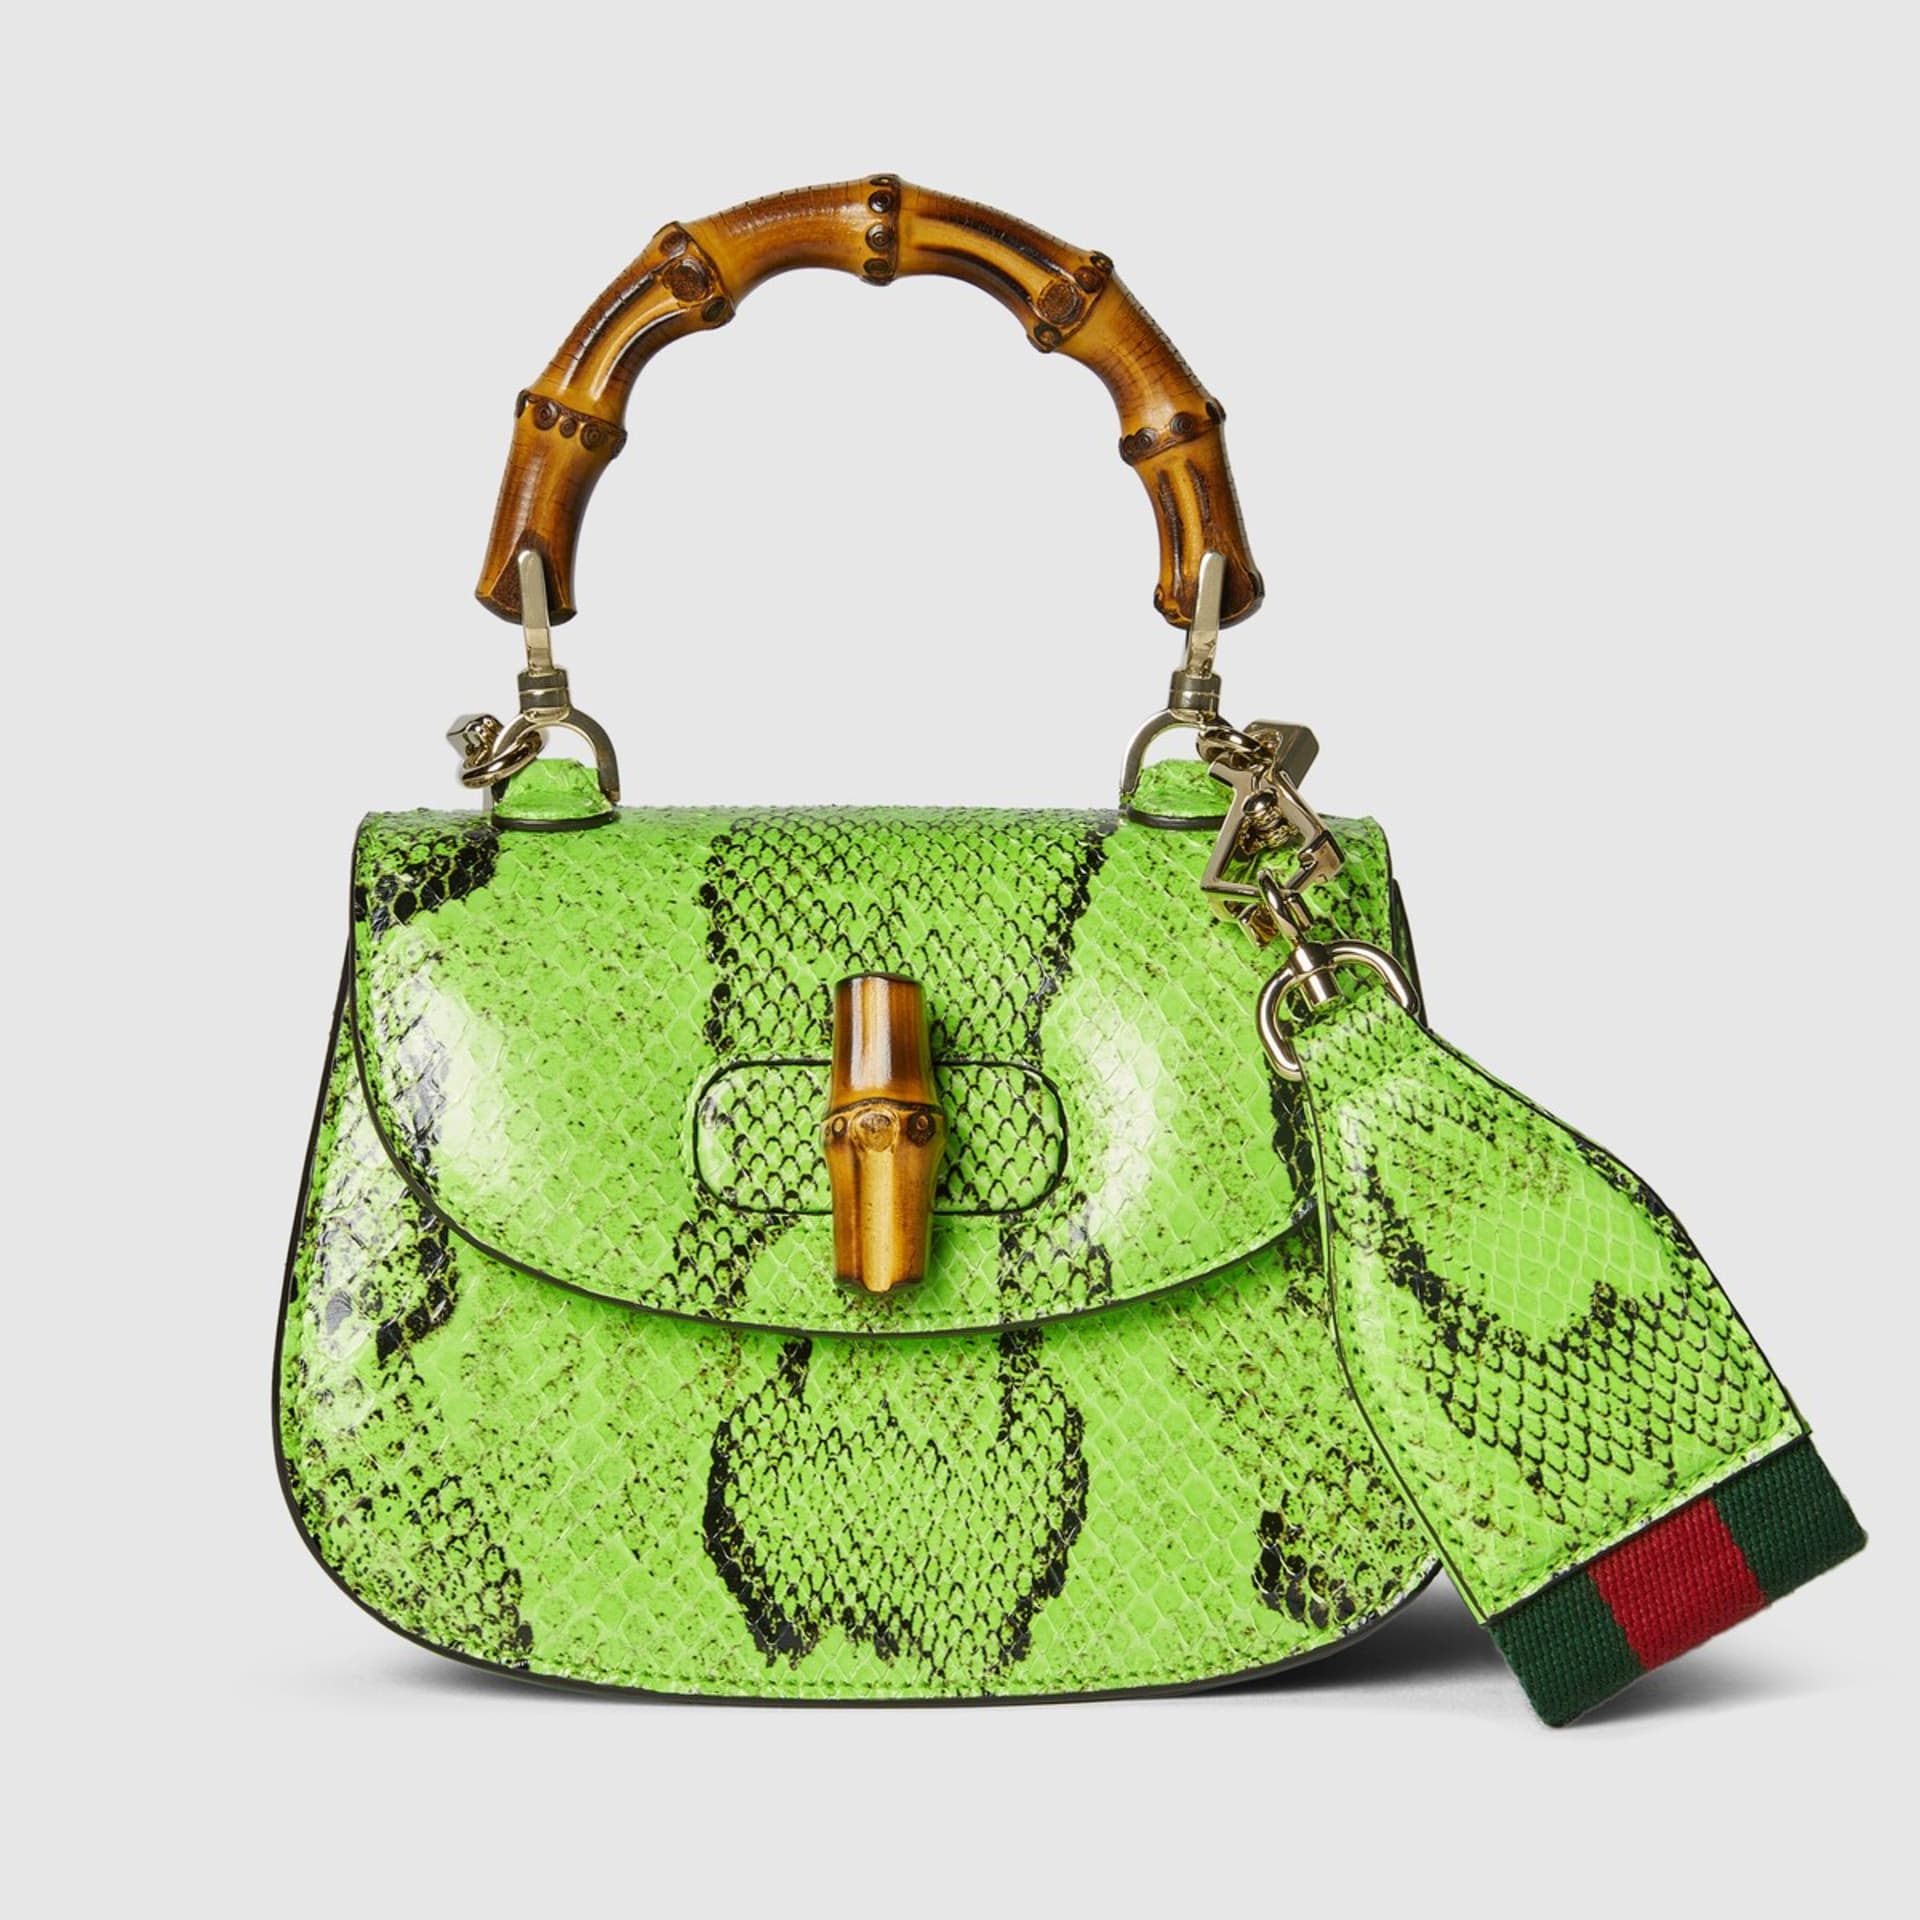 Gucci má v nabídce produkty z hadí kůže.